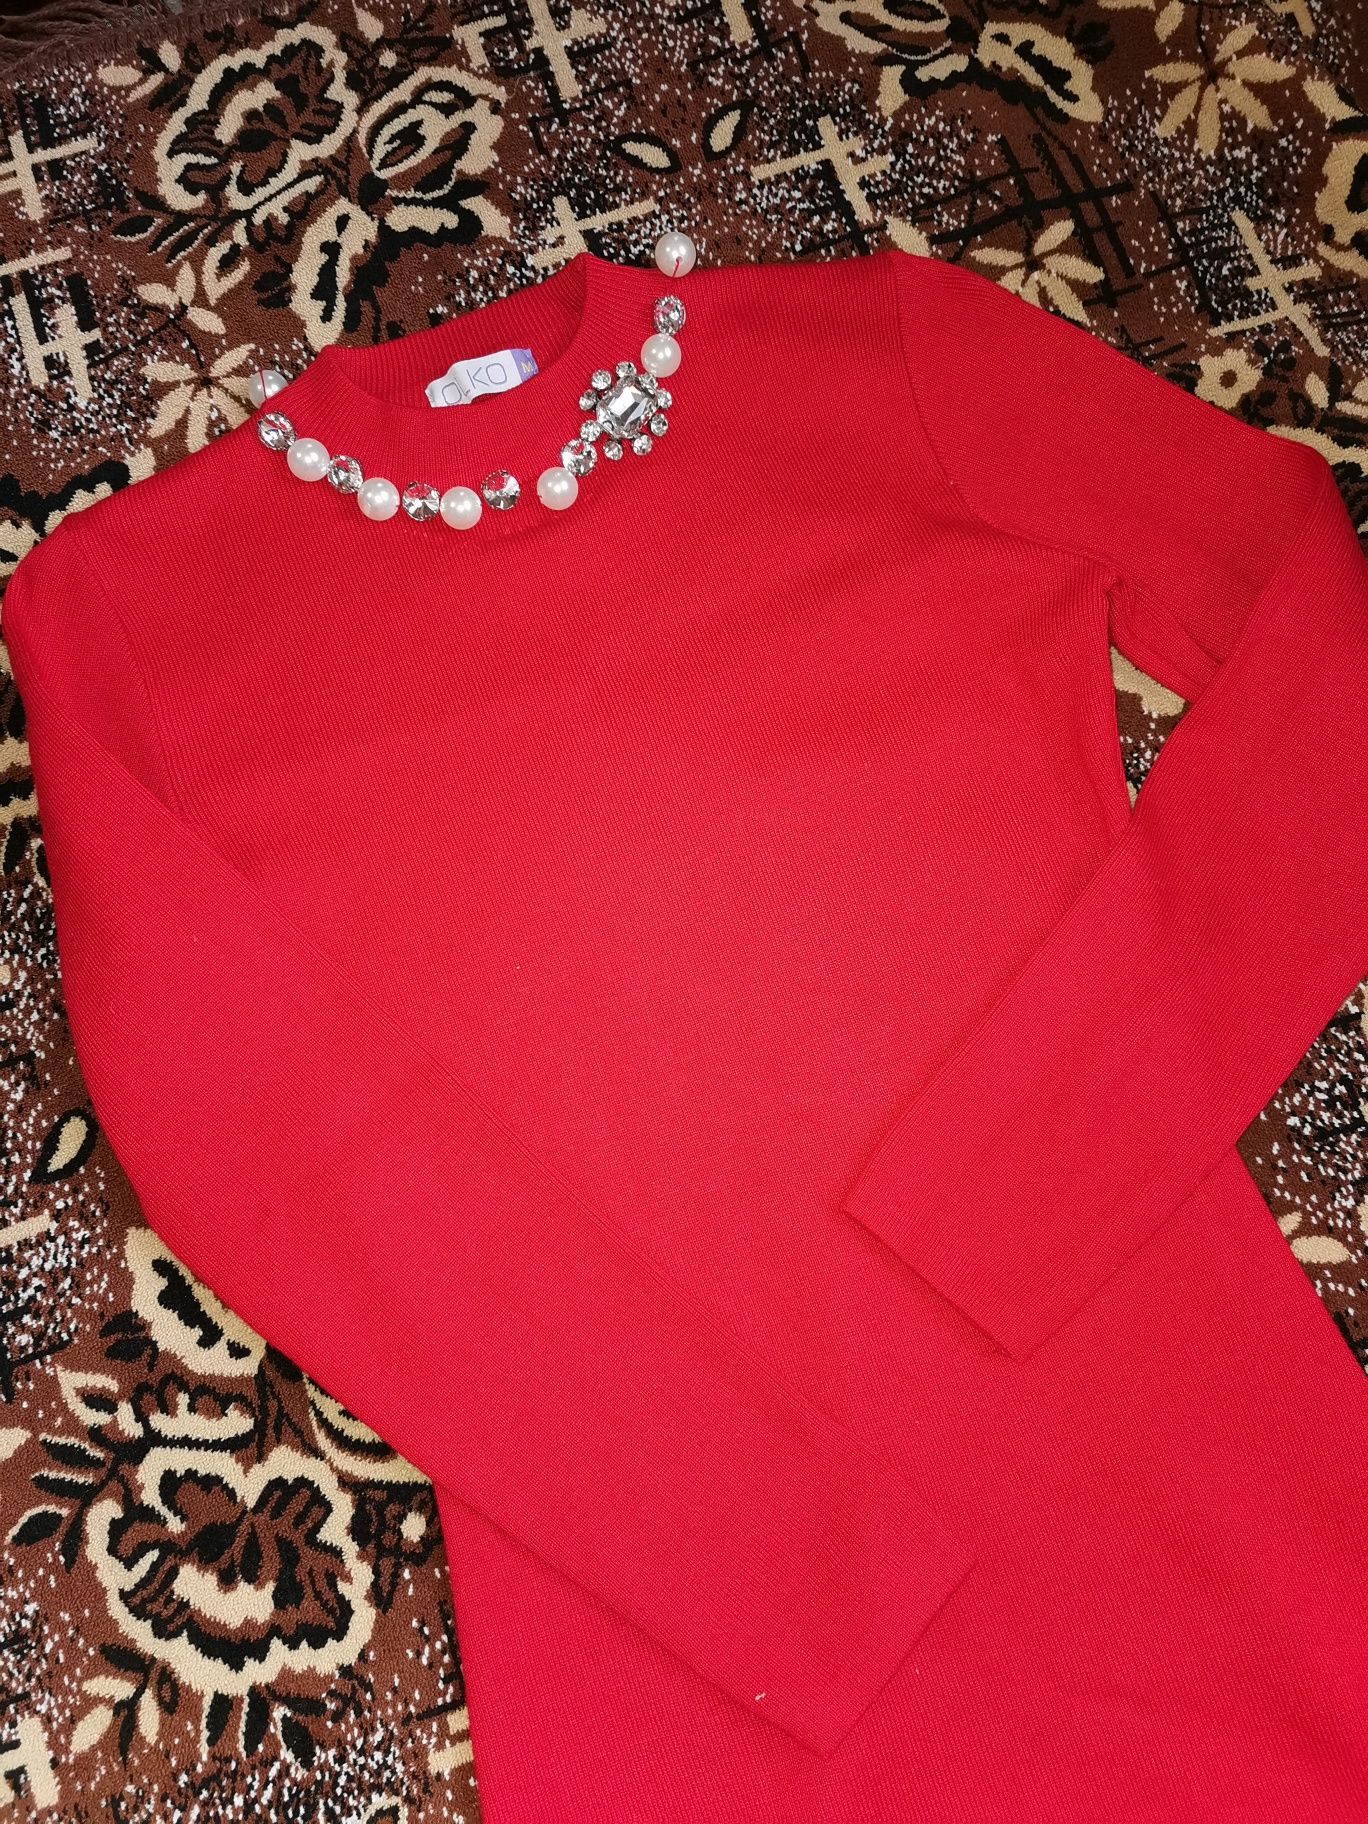 Вечернее красное платье